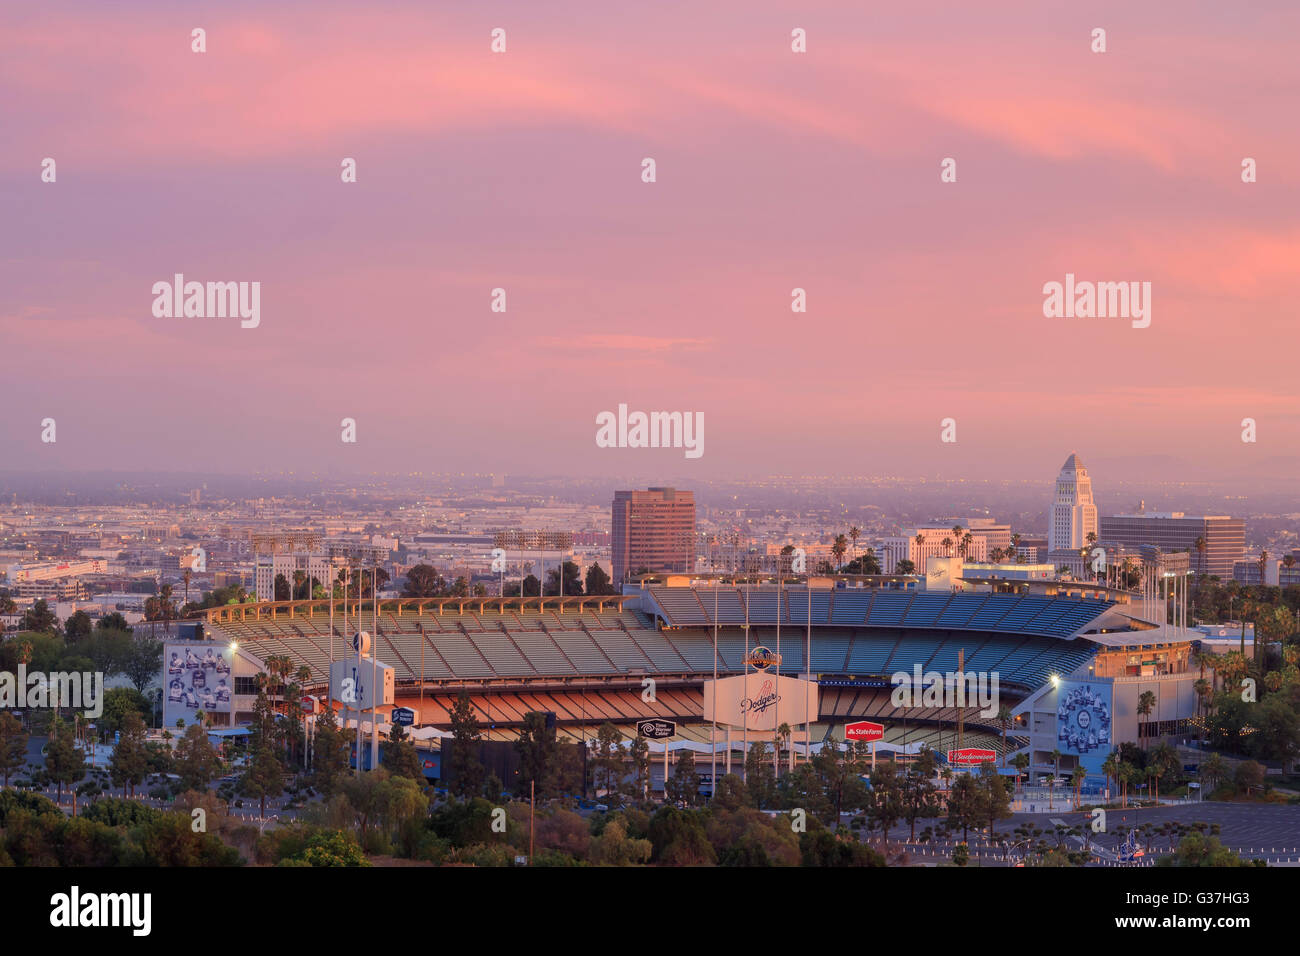 Giu 28, Los Angeles: Dodger Stadium e L.A. Towndown con red sky a giugno 28, 2015 a Los Angeles Foto Stock